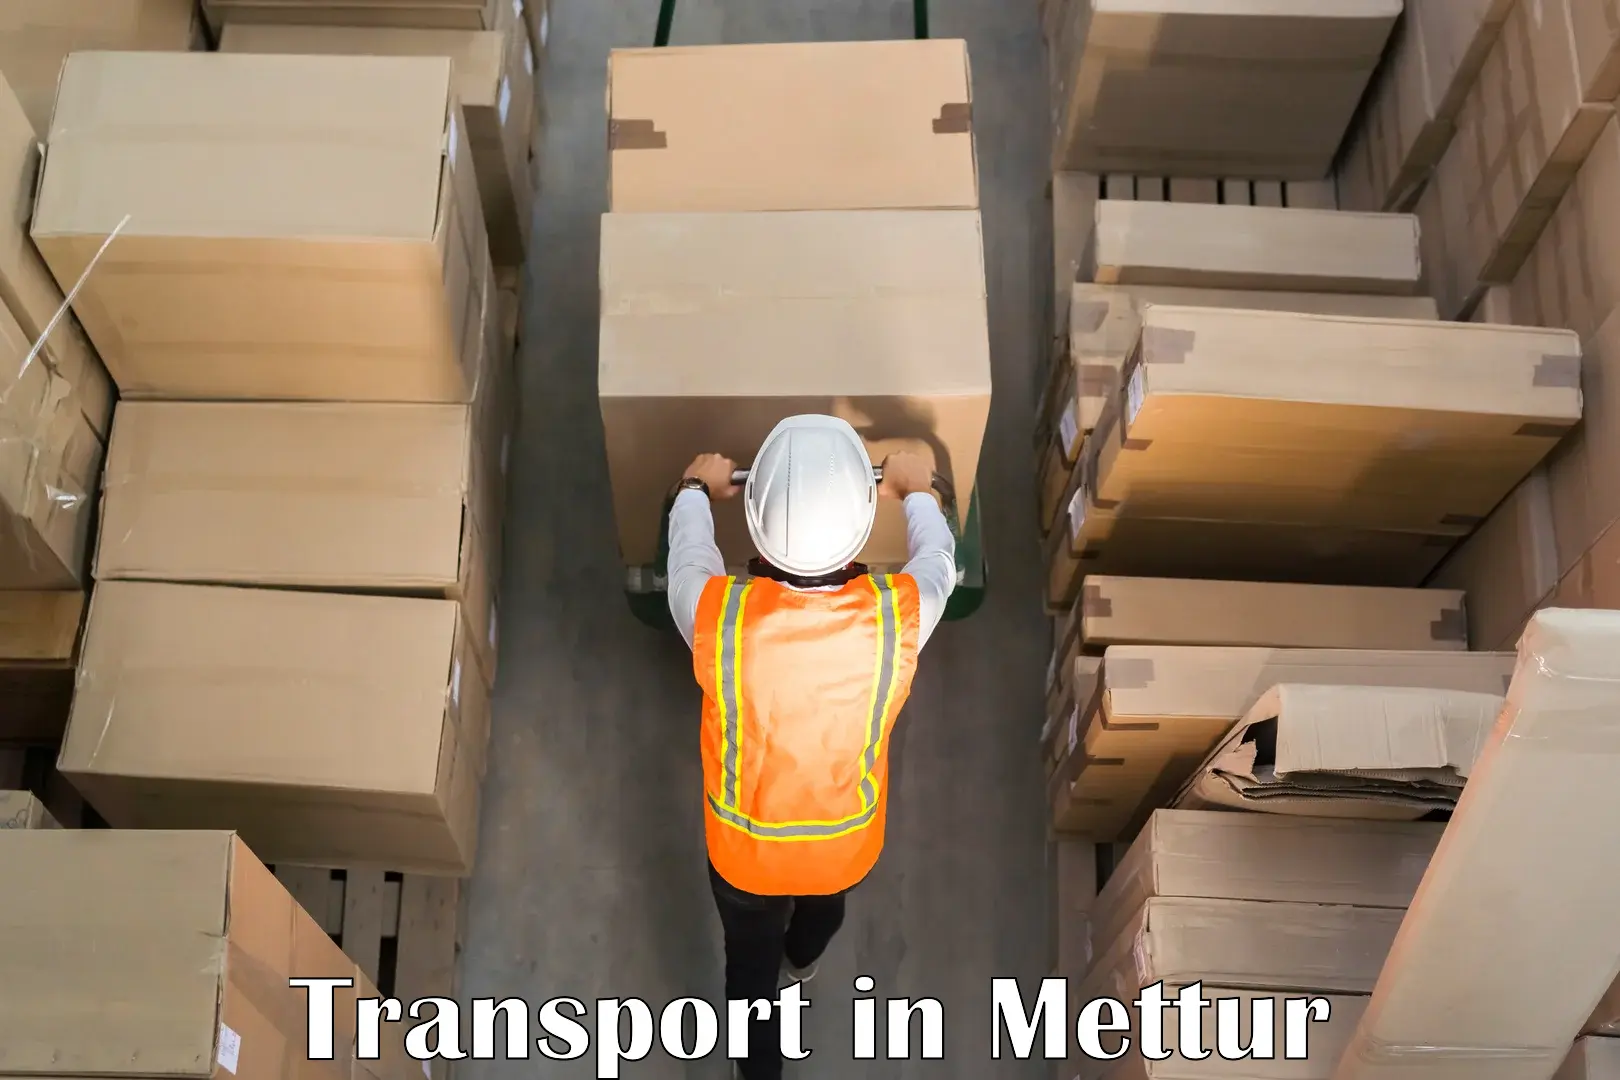 Interstate transport services in Mettur